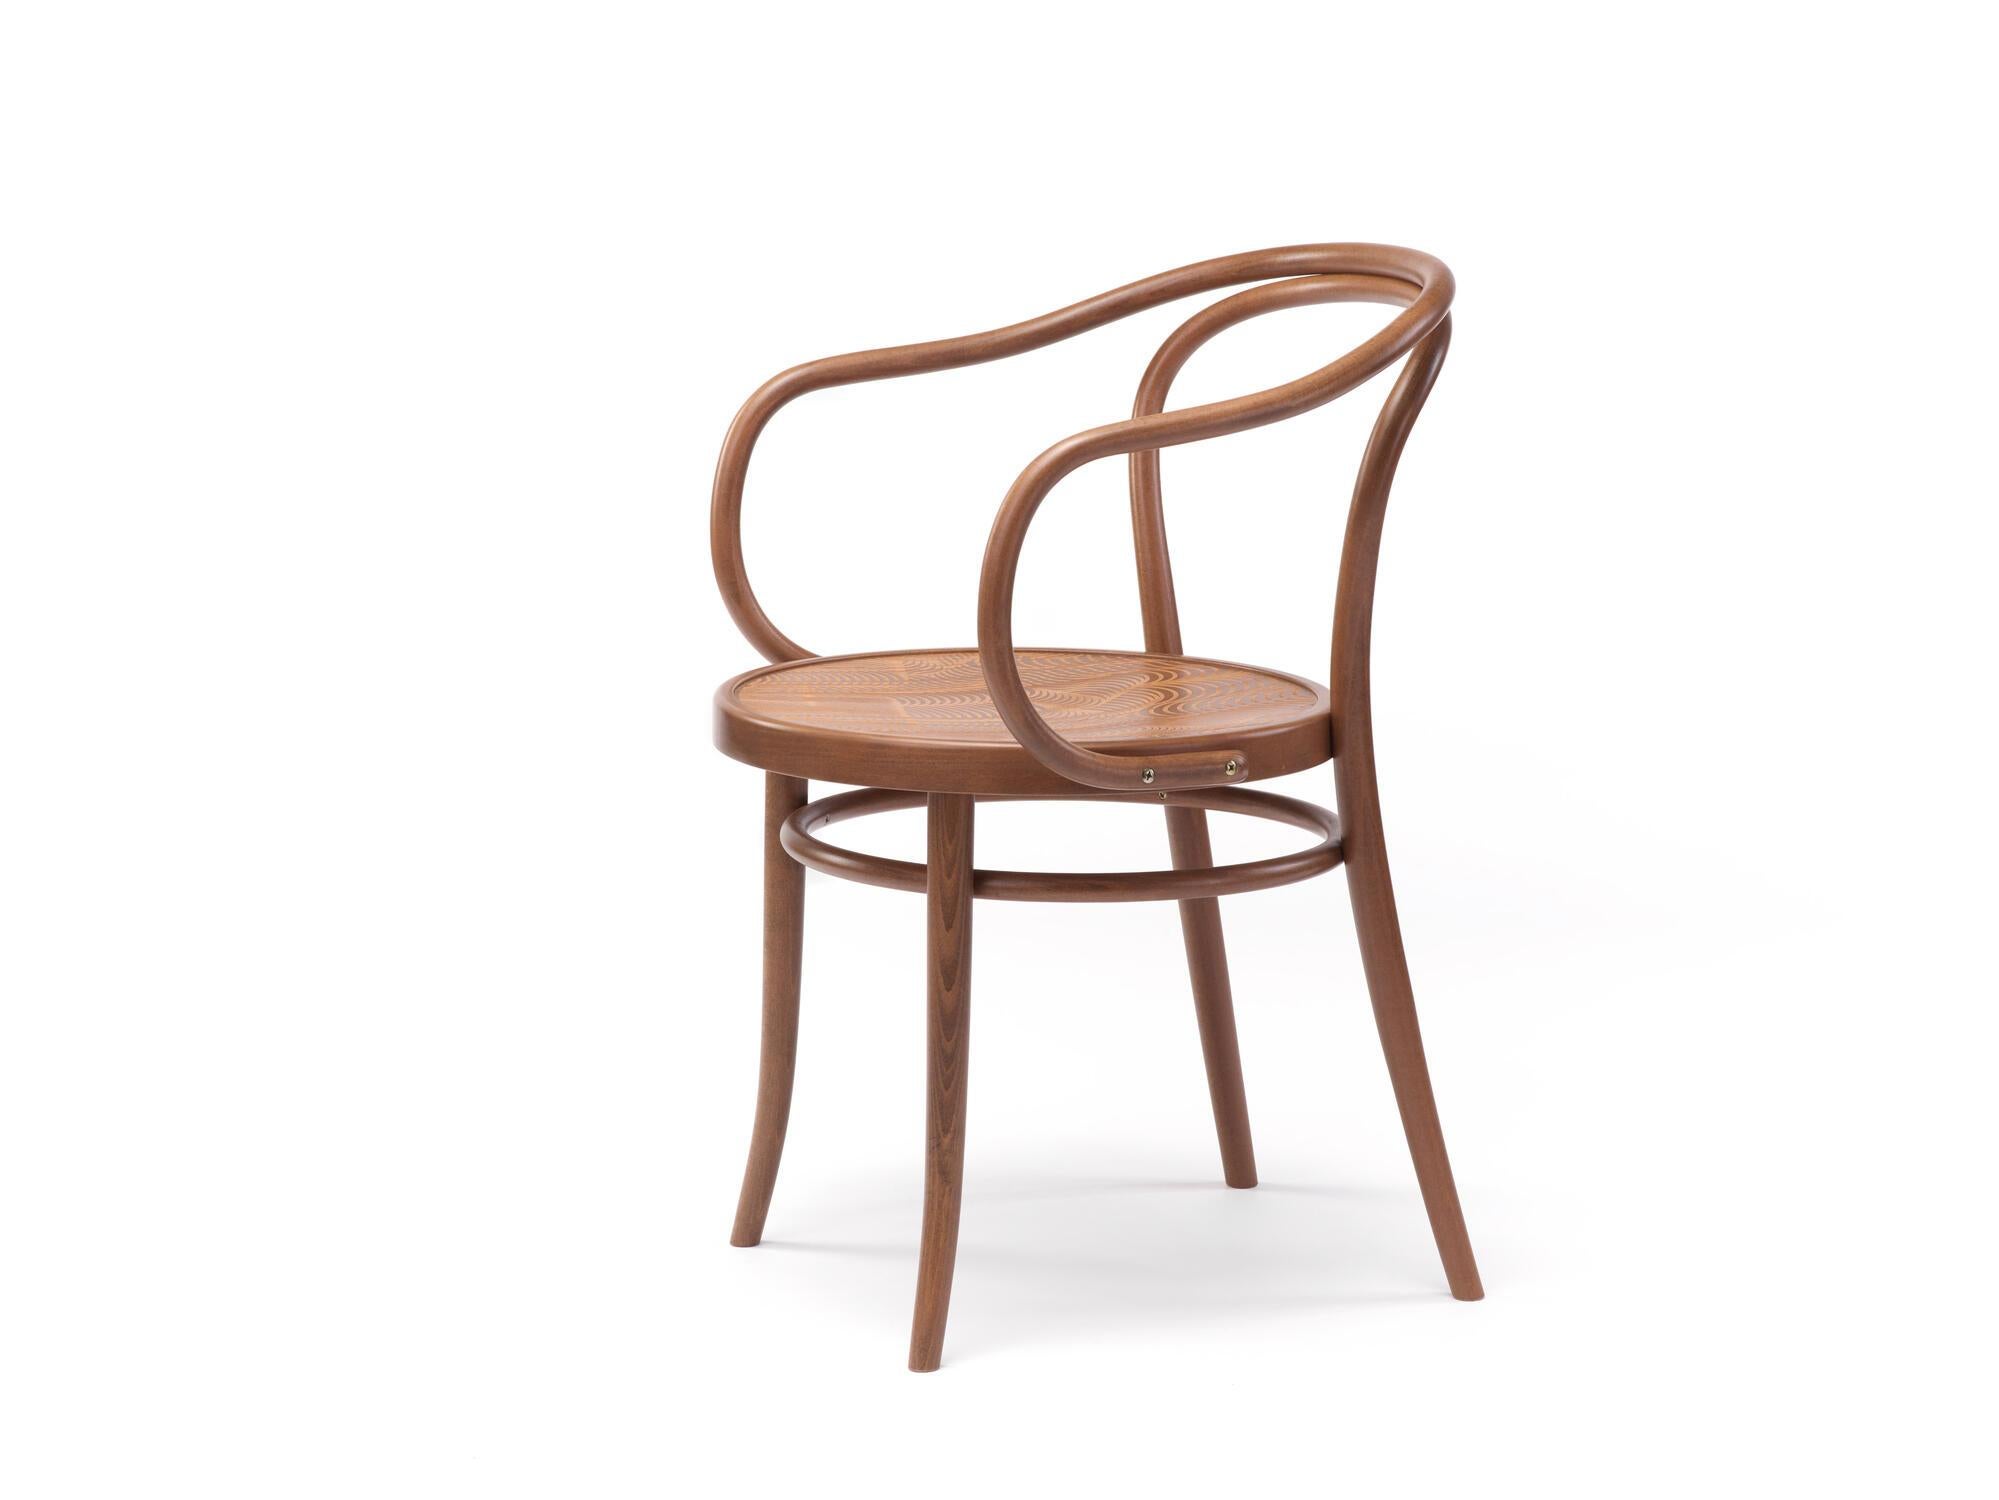 Fauteuil n° 30
Chaise de bistrot iconique conçue par Michael Thonet en 1869, aujourd'hui produite dans la même manufacture en République tchèque par TON. 

Bois : hêtre massif 
Nature : lumière naturelle 
Assise : bois simple 

--
La chaise no. 30